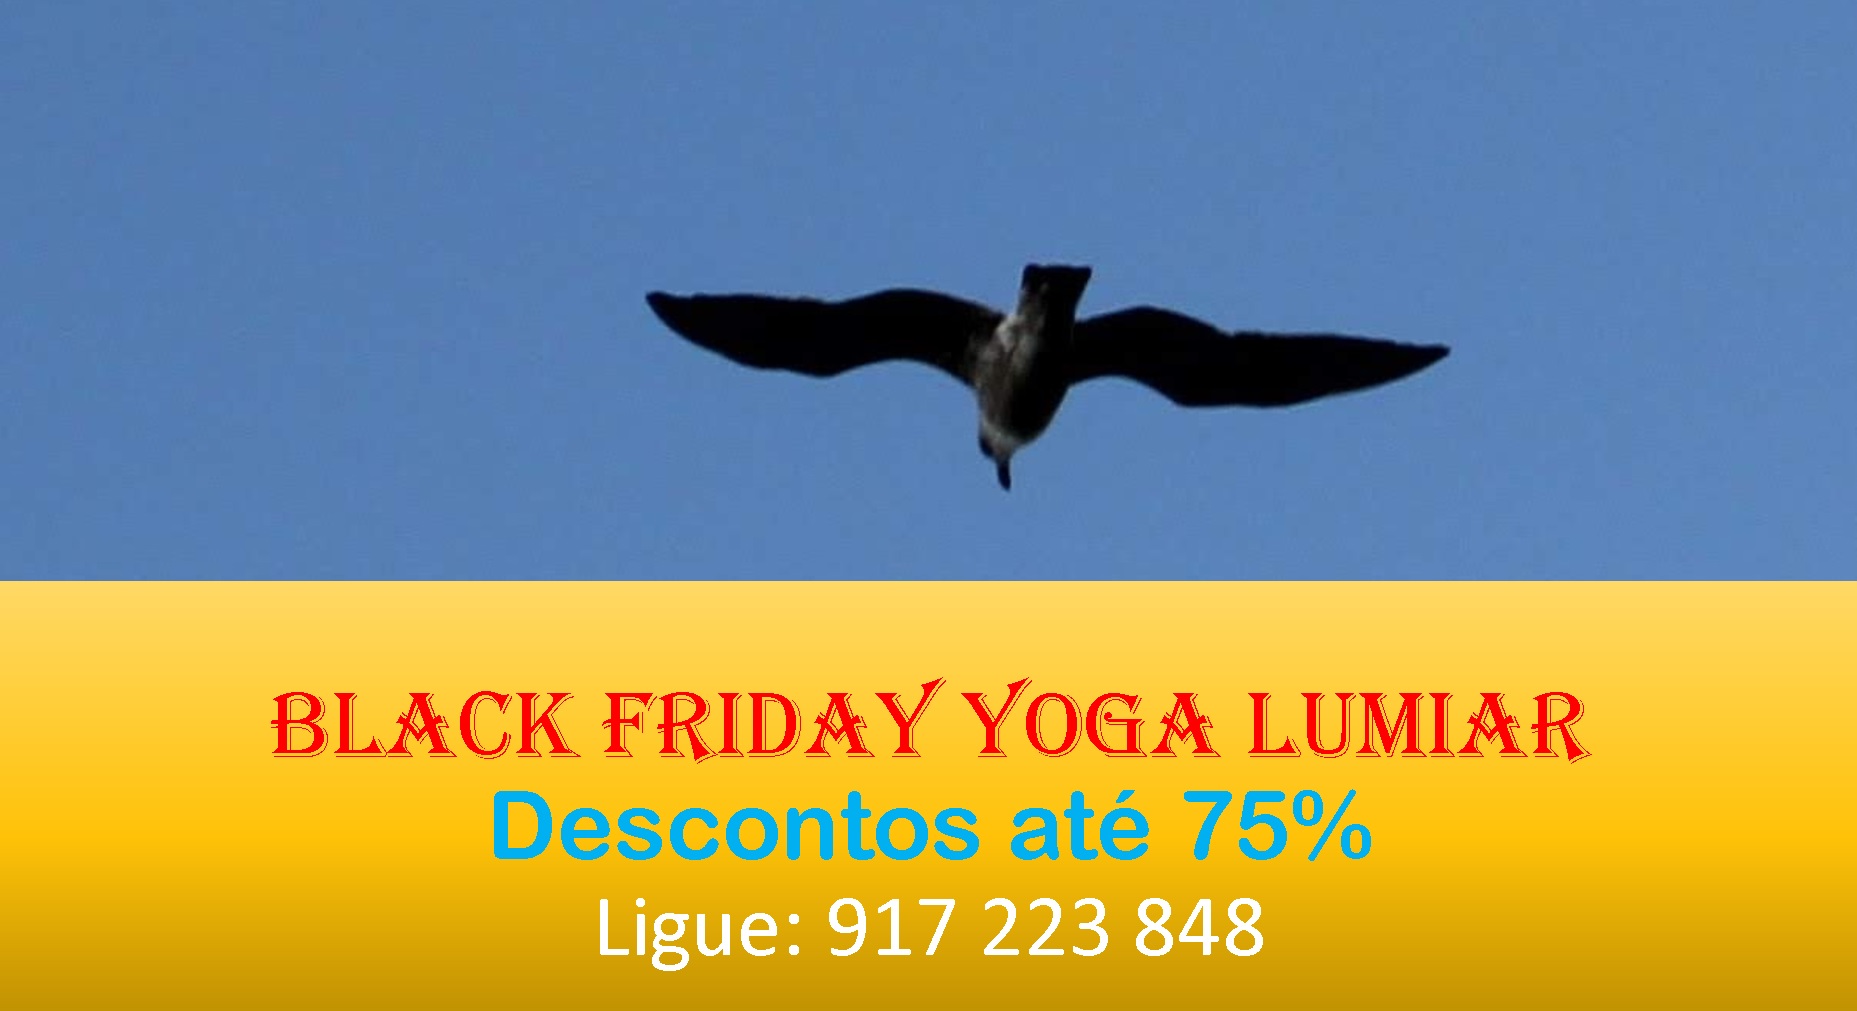 Black Friday Yoga Lumiar